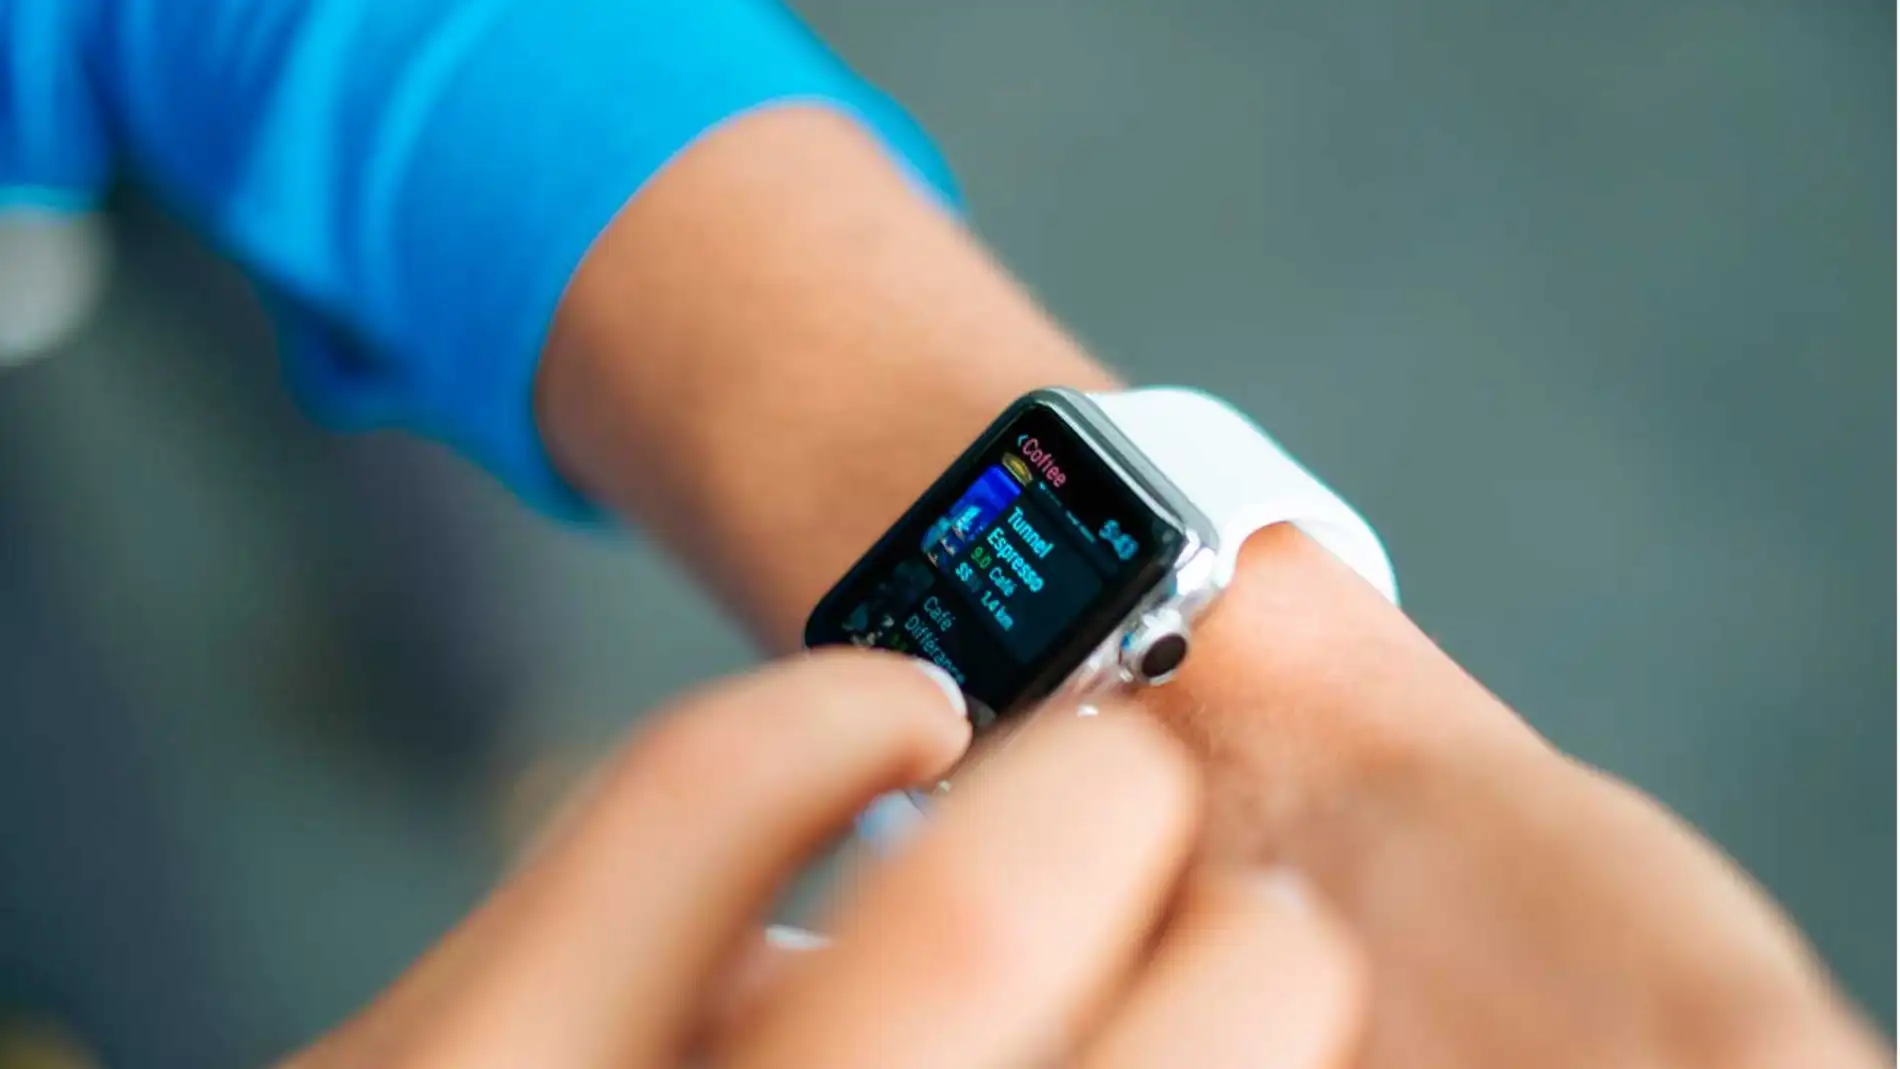 ¿Quieres pagar en tiendas con tu próximo smartwatch? Esta es la característica que debe tener